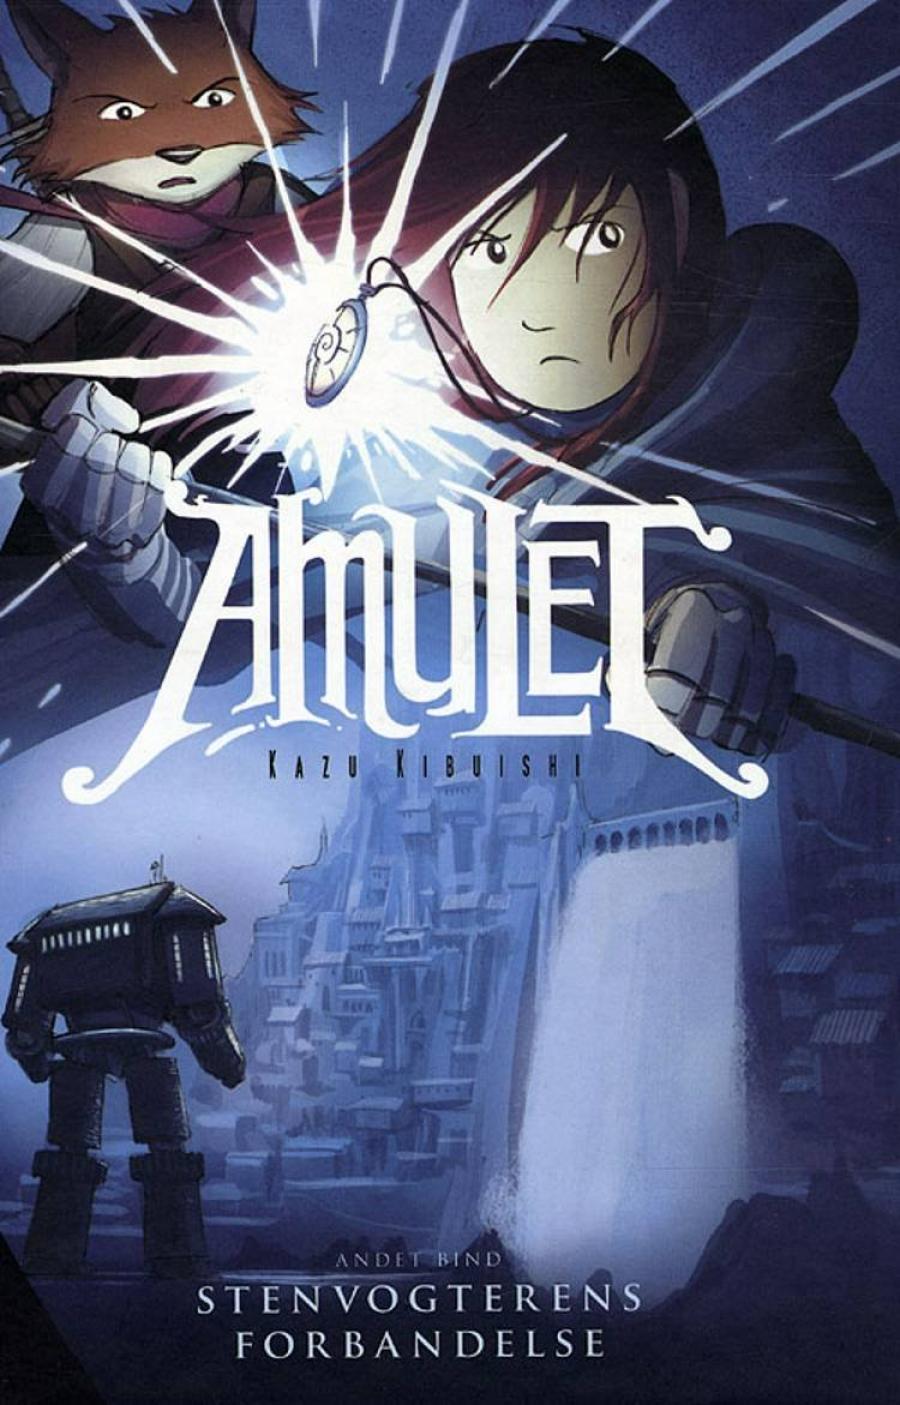 Forsidebillede af tegneserien Amulet 2 Stenvogterens forbandelse af Kazu Kibuishi 